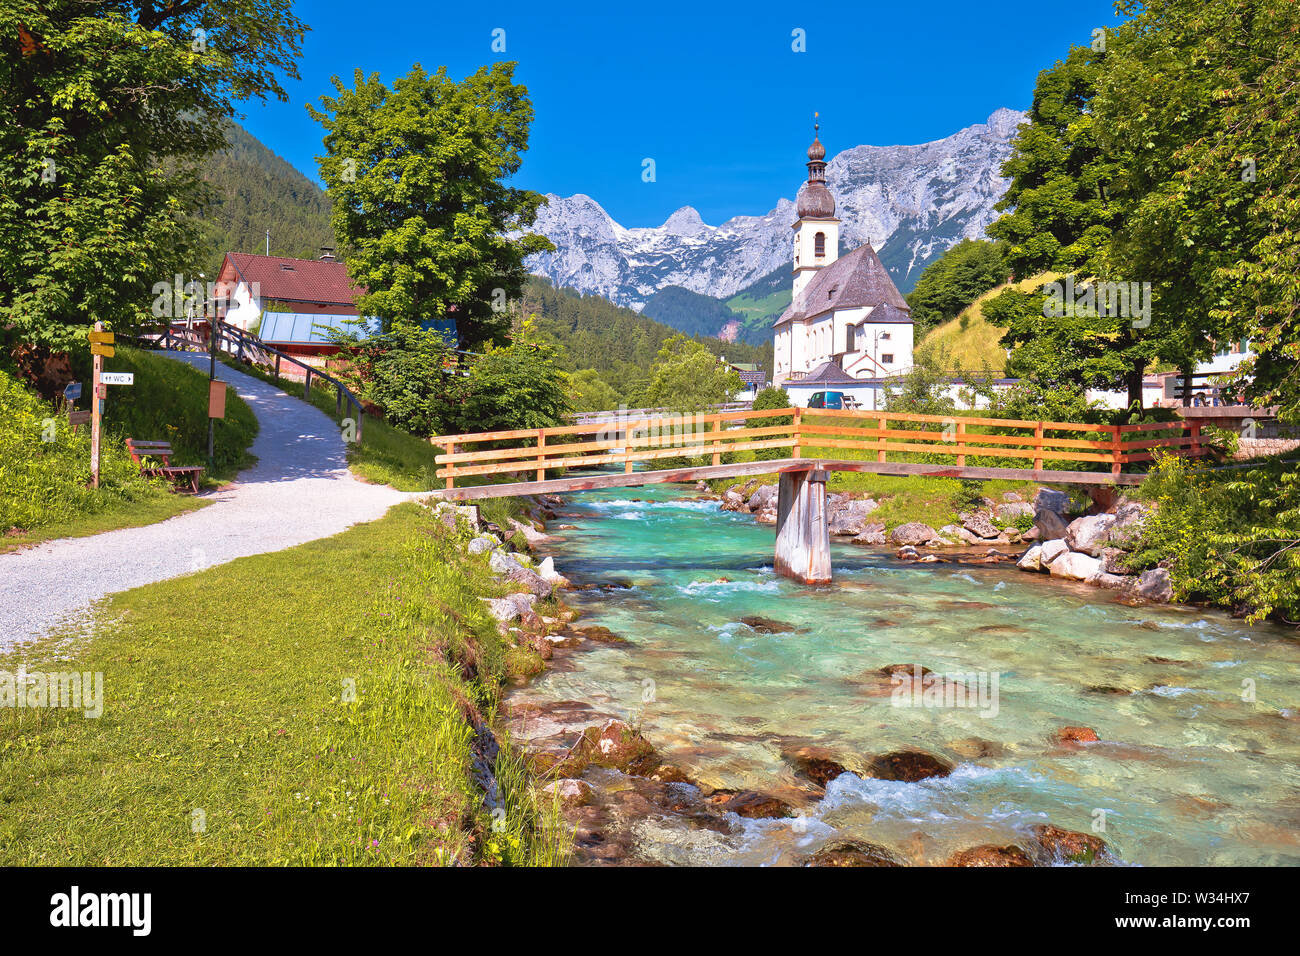 Sankt Sebastian Wallfahrtskirche mit Alpine türkis River alpine Landschaft, Ramsau, Nationalpark Berchtesgadener Land, Bayern, Deutschland Stockfoto